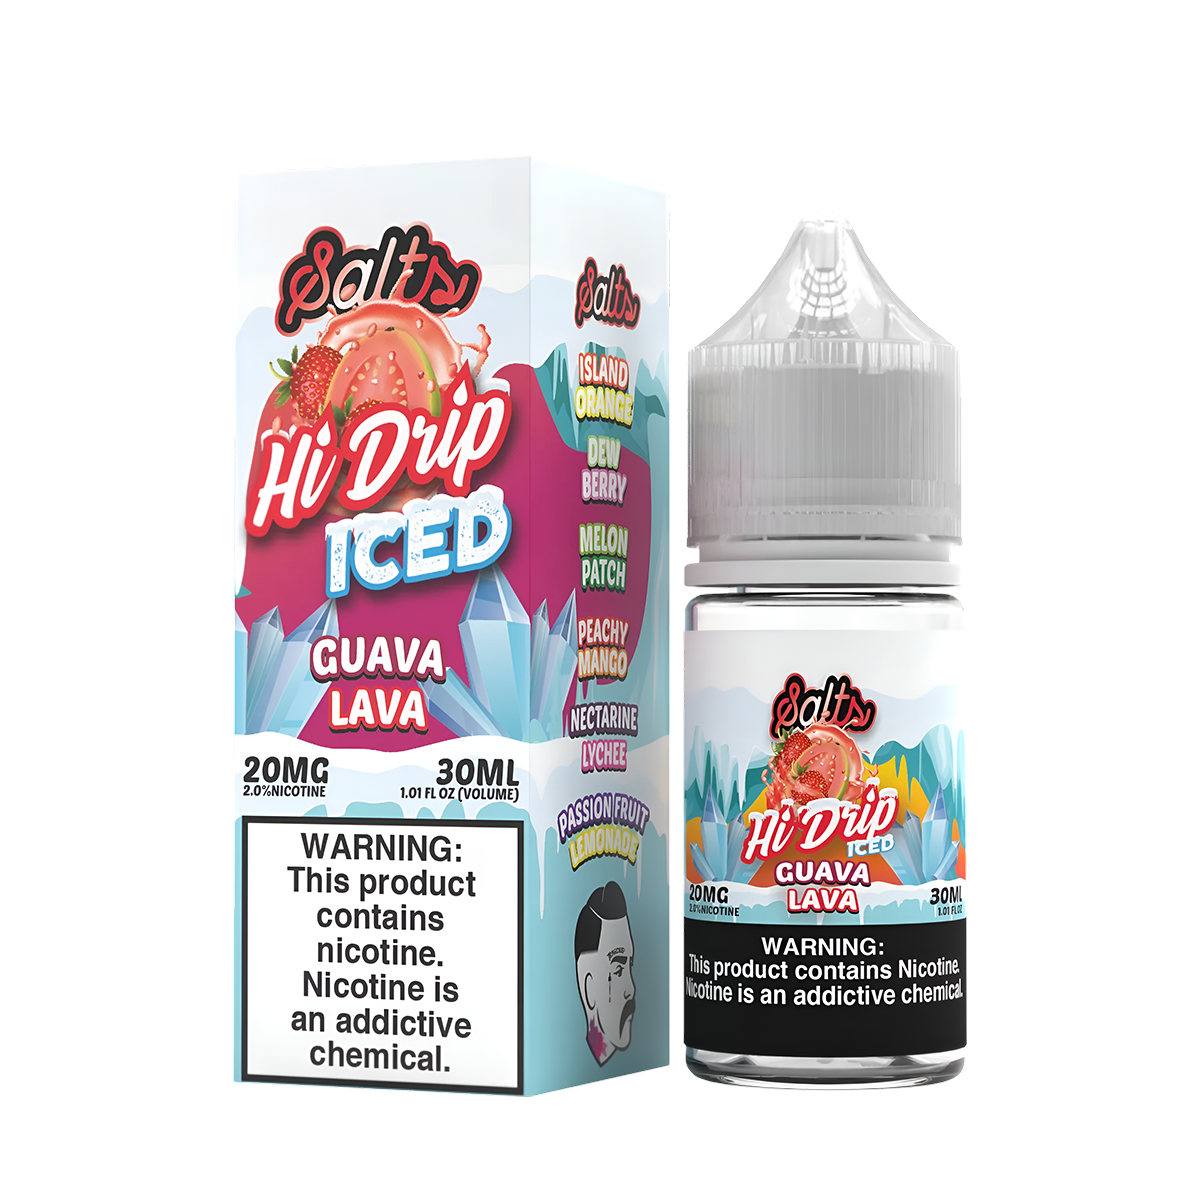 Hi Drip Iced Salt Nicotine Vape Juice 20 Mg 30 Ml Guava Lava Iced